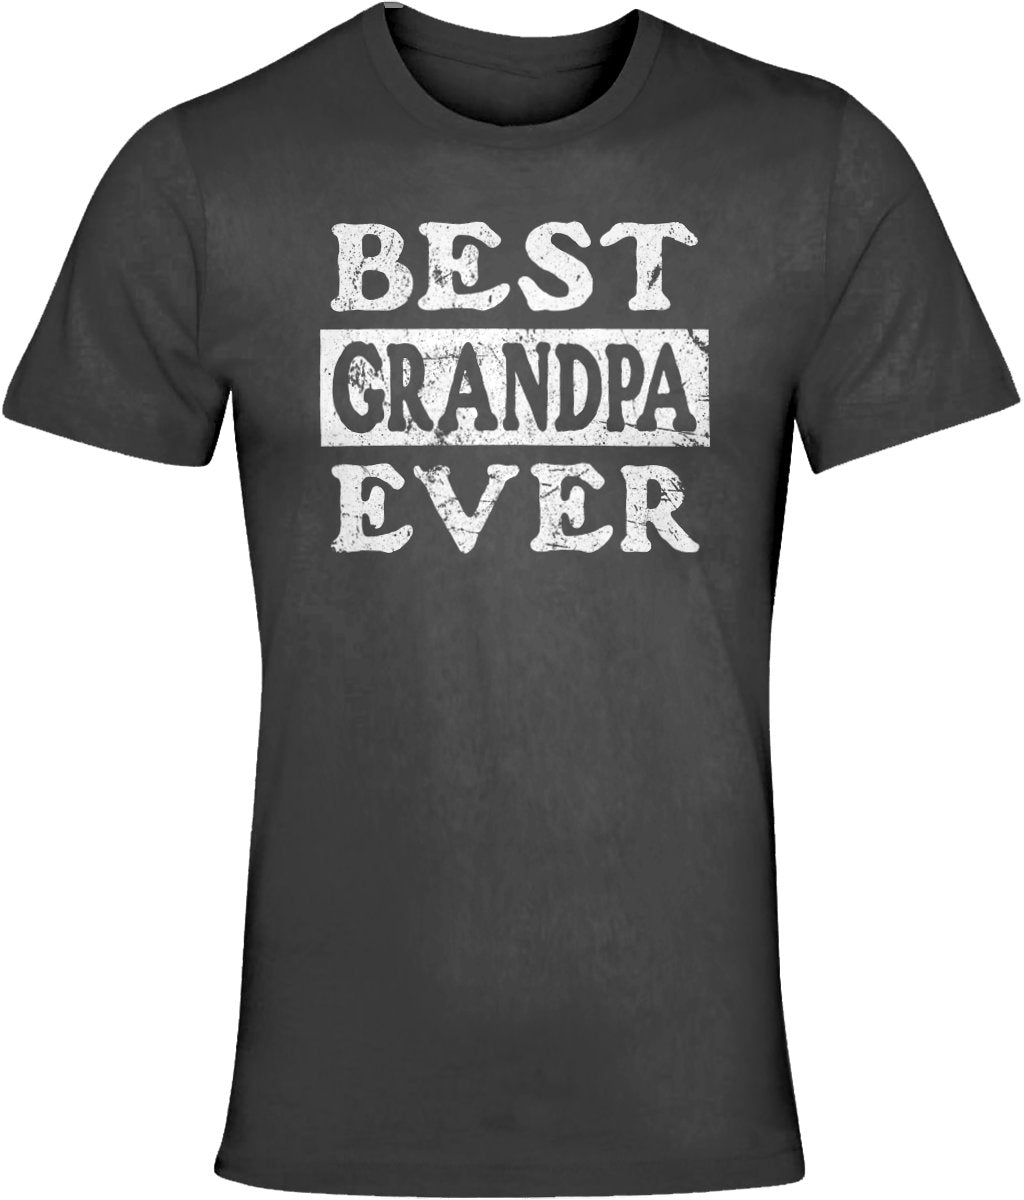 Best Grandpa Ever T-Shirt Unisex Crew Neck Tee Shirt Top